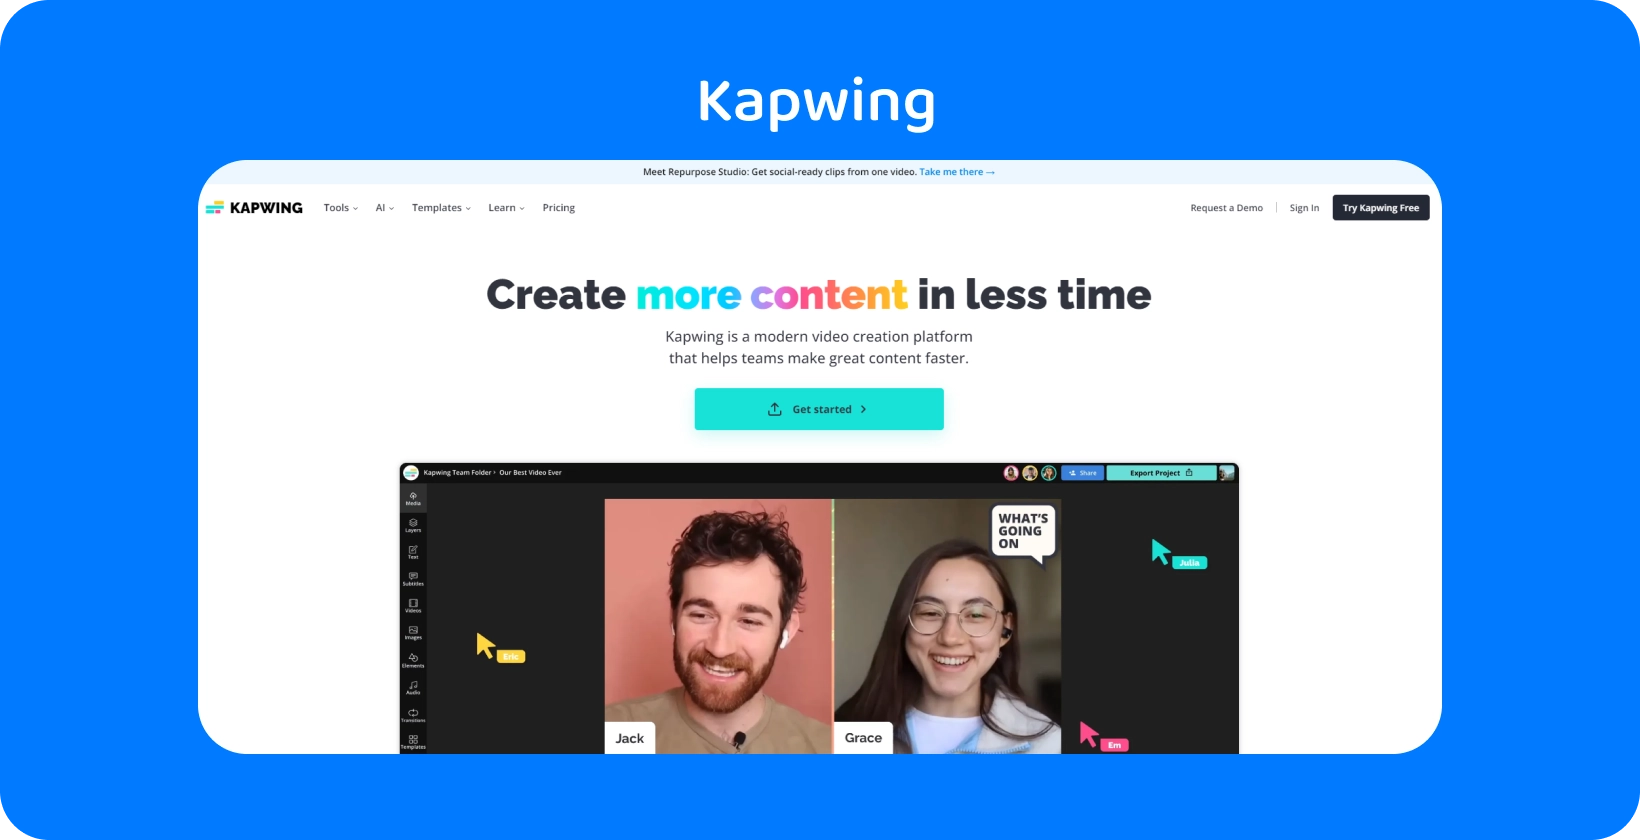 O editor de legendas Kapwing é apresentado com uma interface amigável, auxiliando as equipes na criação eficiente de conteúdo.